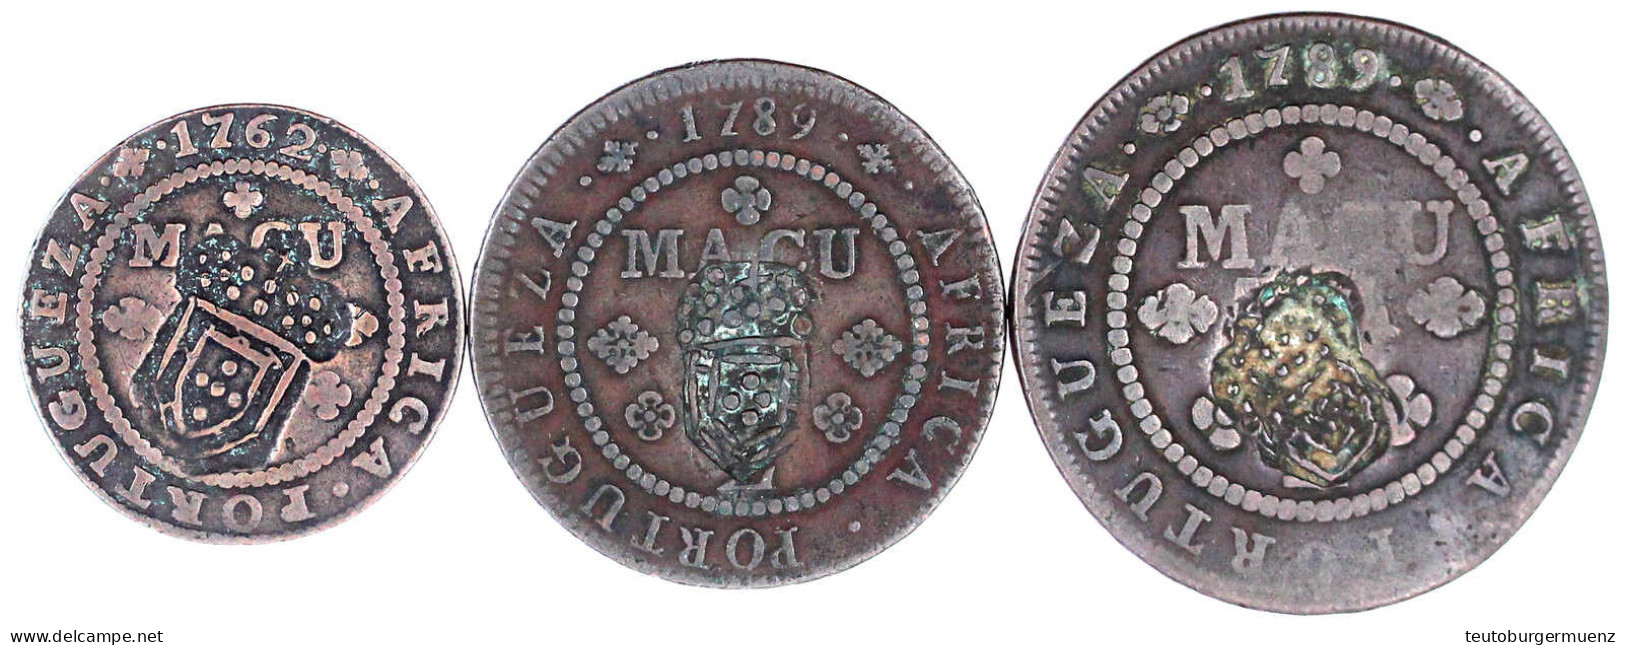 3 Kupfermünzen: 1/4 Macuta 1762, 1/2 Macuta Und 1 Macuta 1789. Alle Mit Gegenstempel Wappen Von 1837. Schön/sehr Schön - Angola